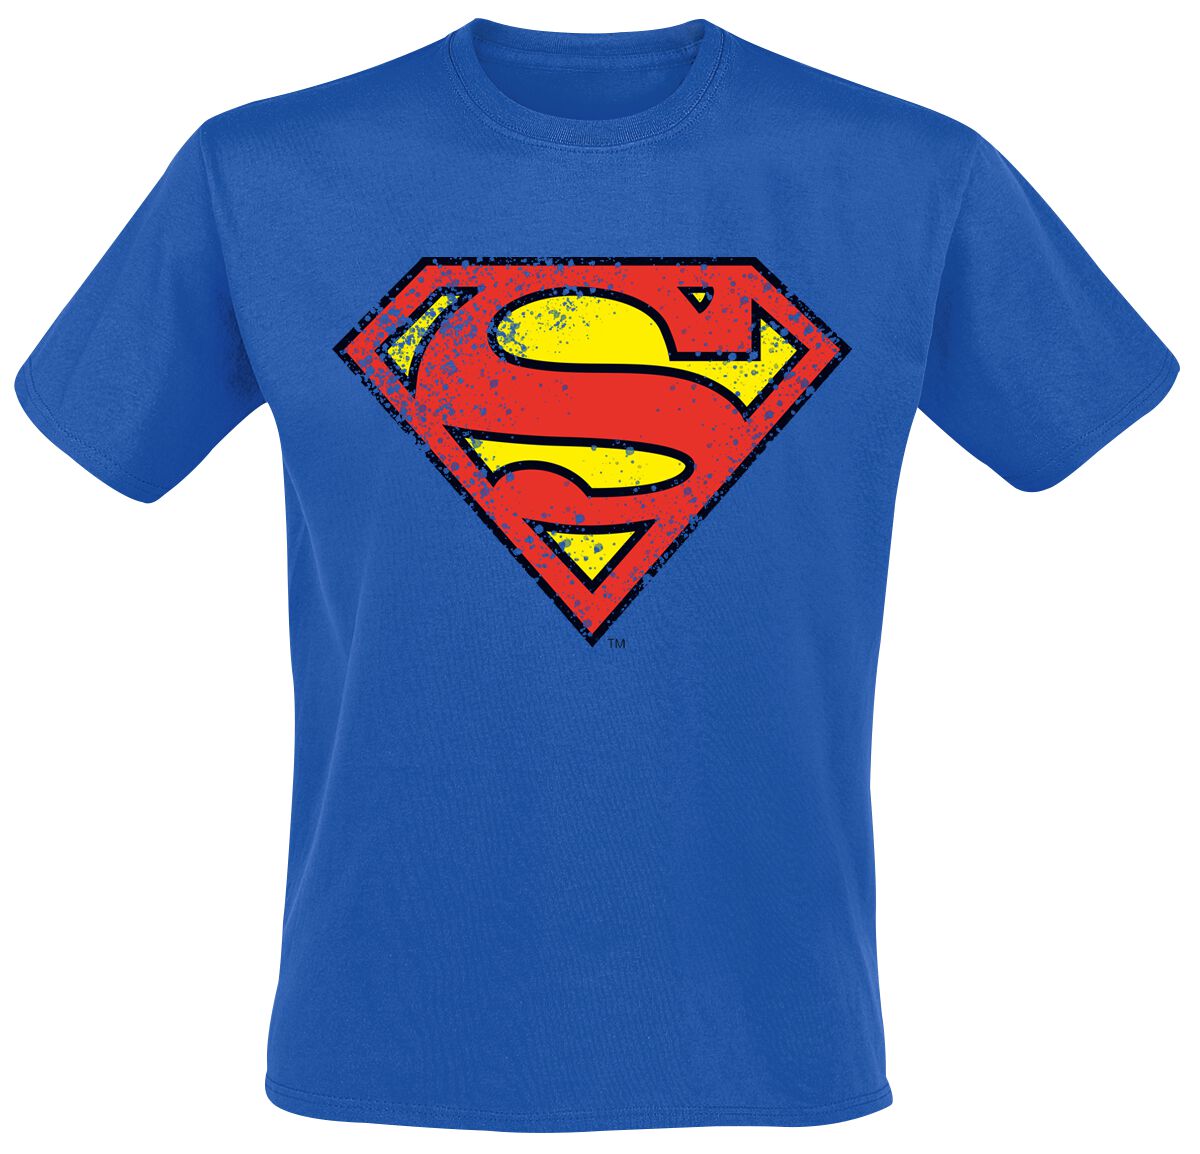 Superman - DC Comics T-Shirt - Crest - S bis XXL - für Männer - Größe S - blau  - EMP exklusives Merchandise!